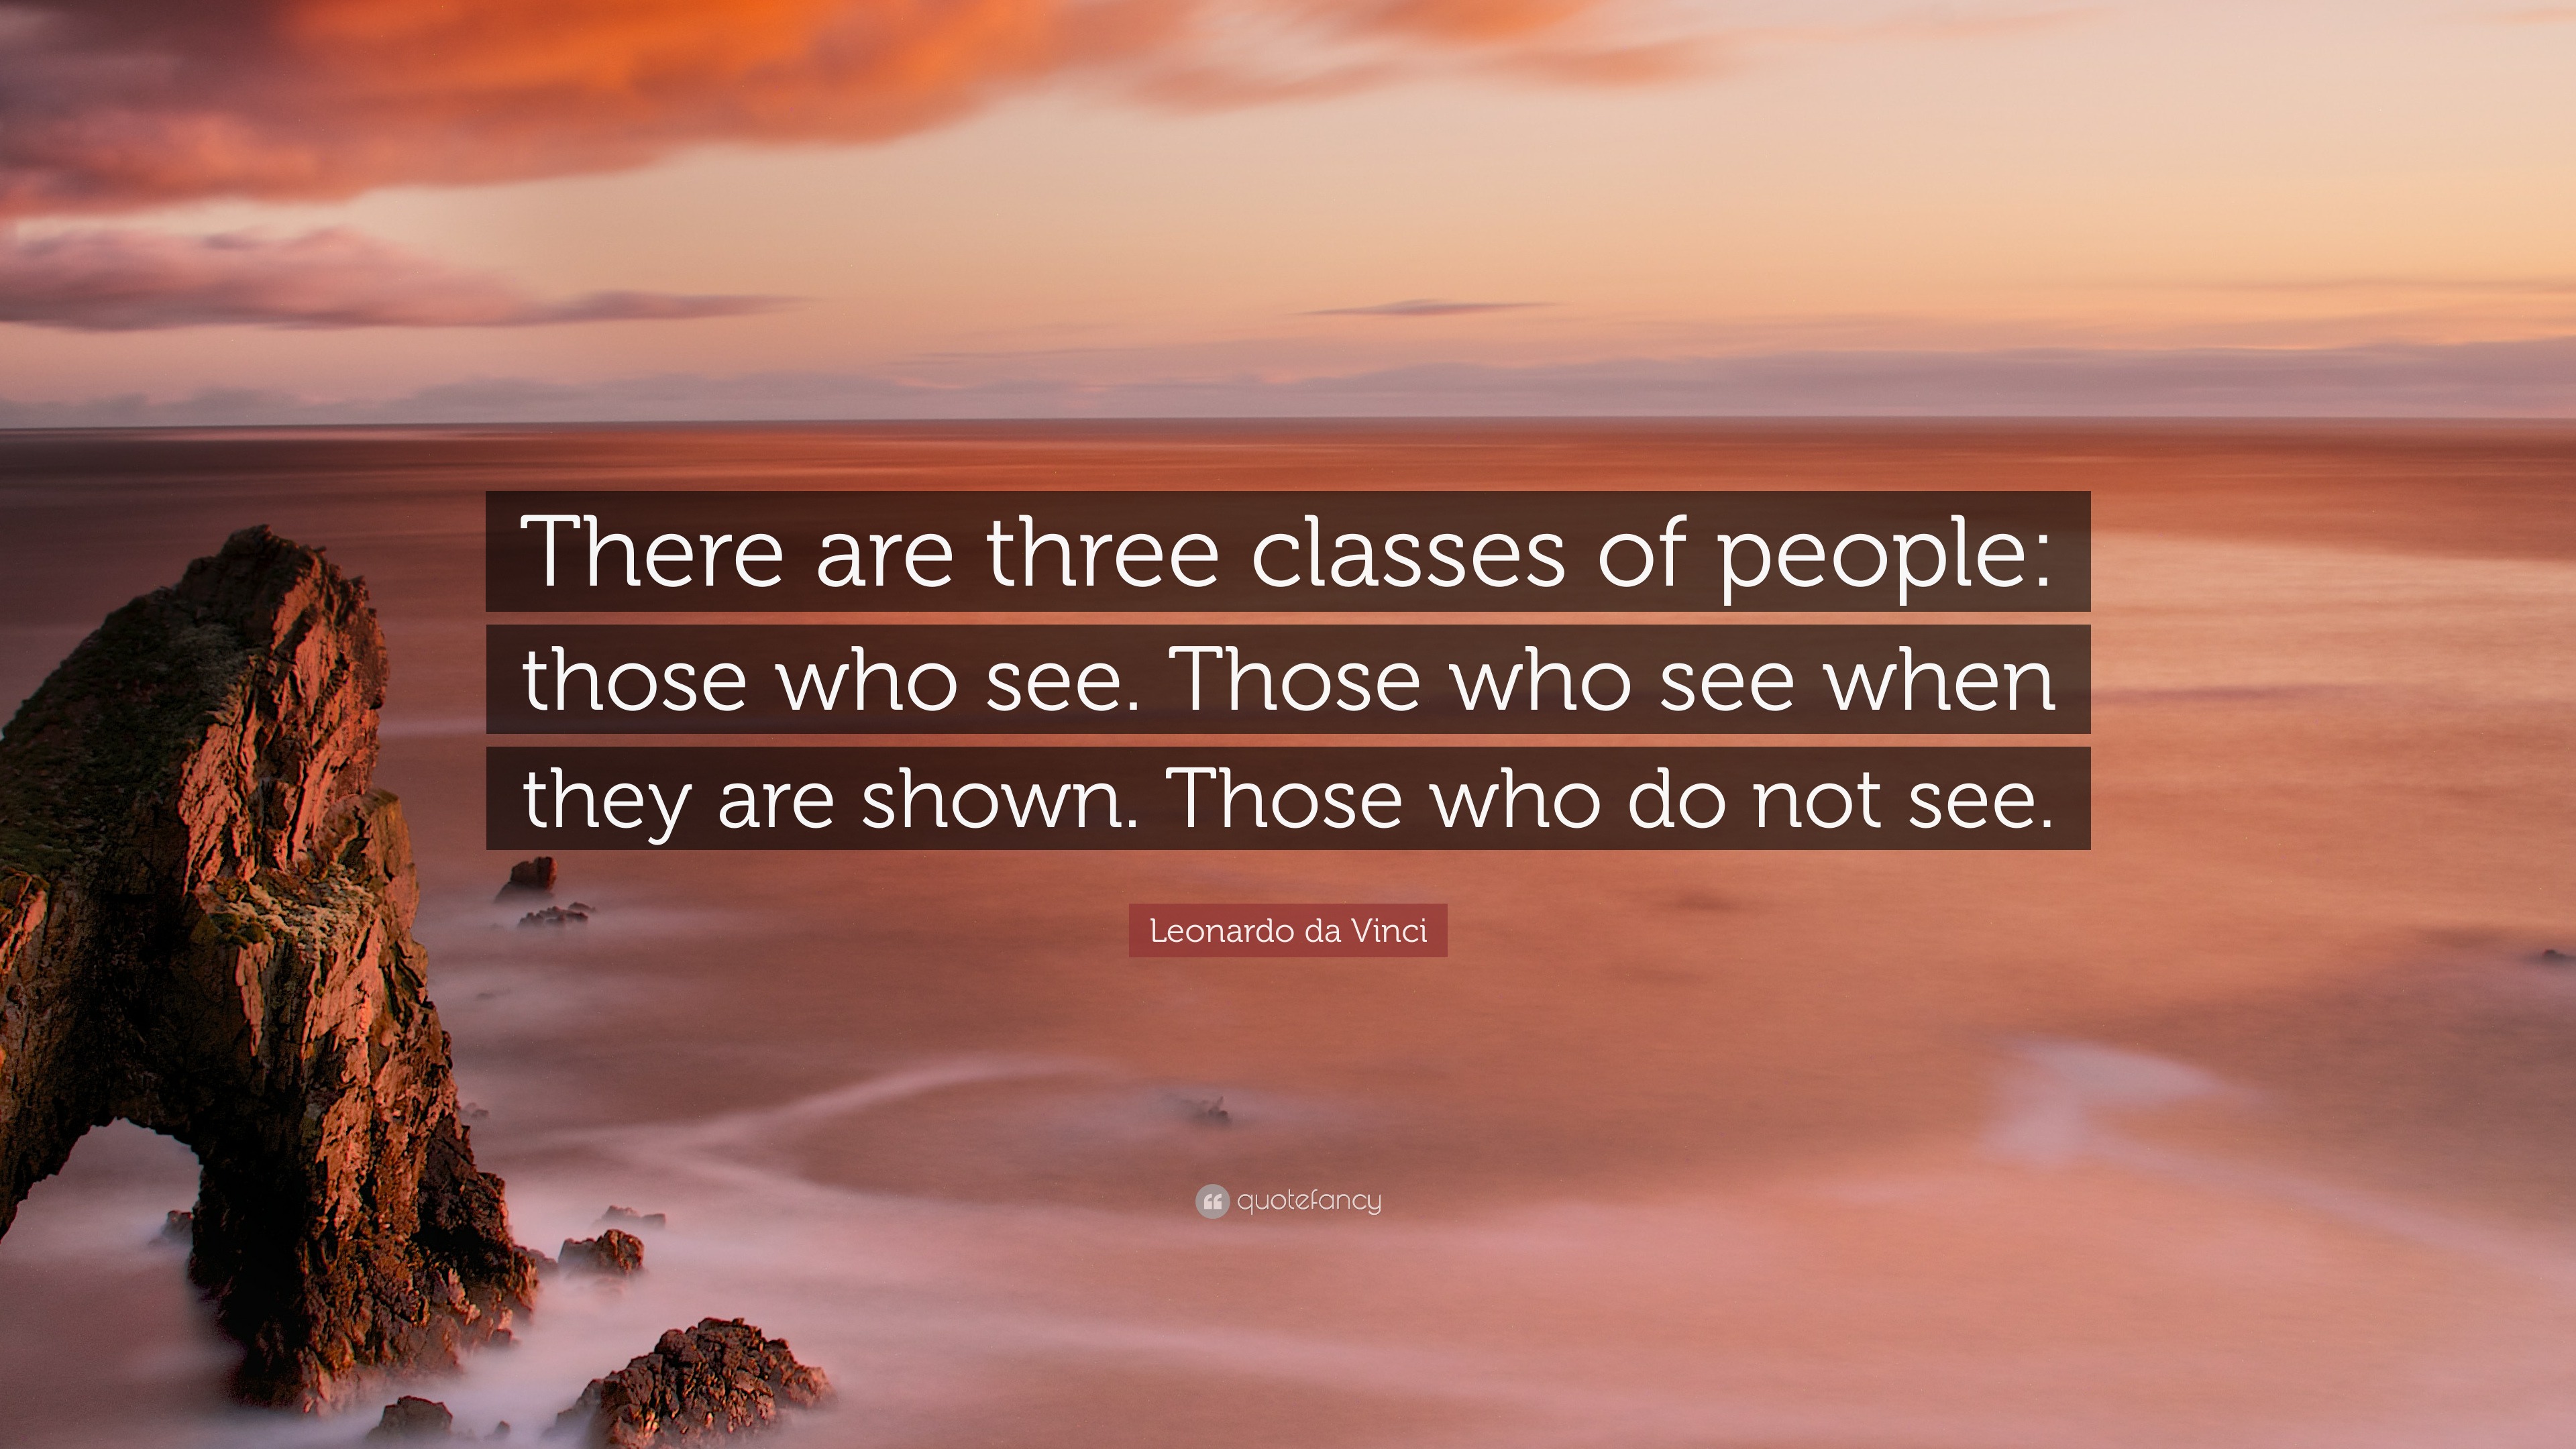 Leonardo da Vinci Quote: “There are three classes of people: those who